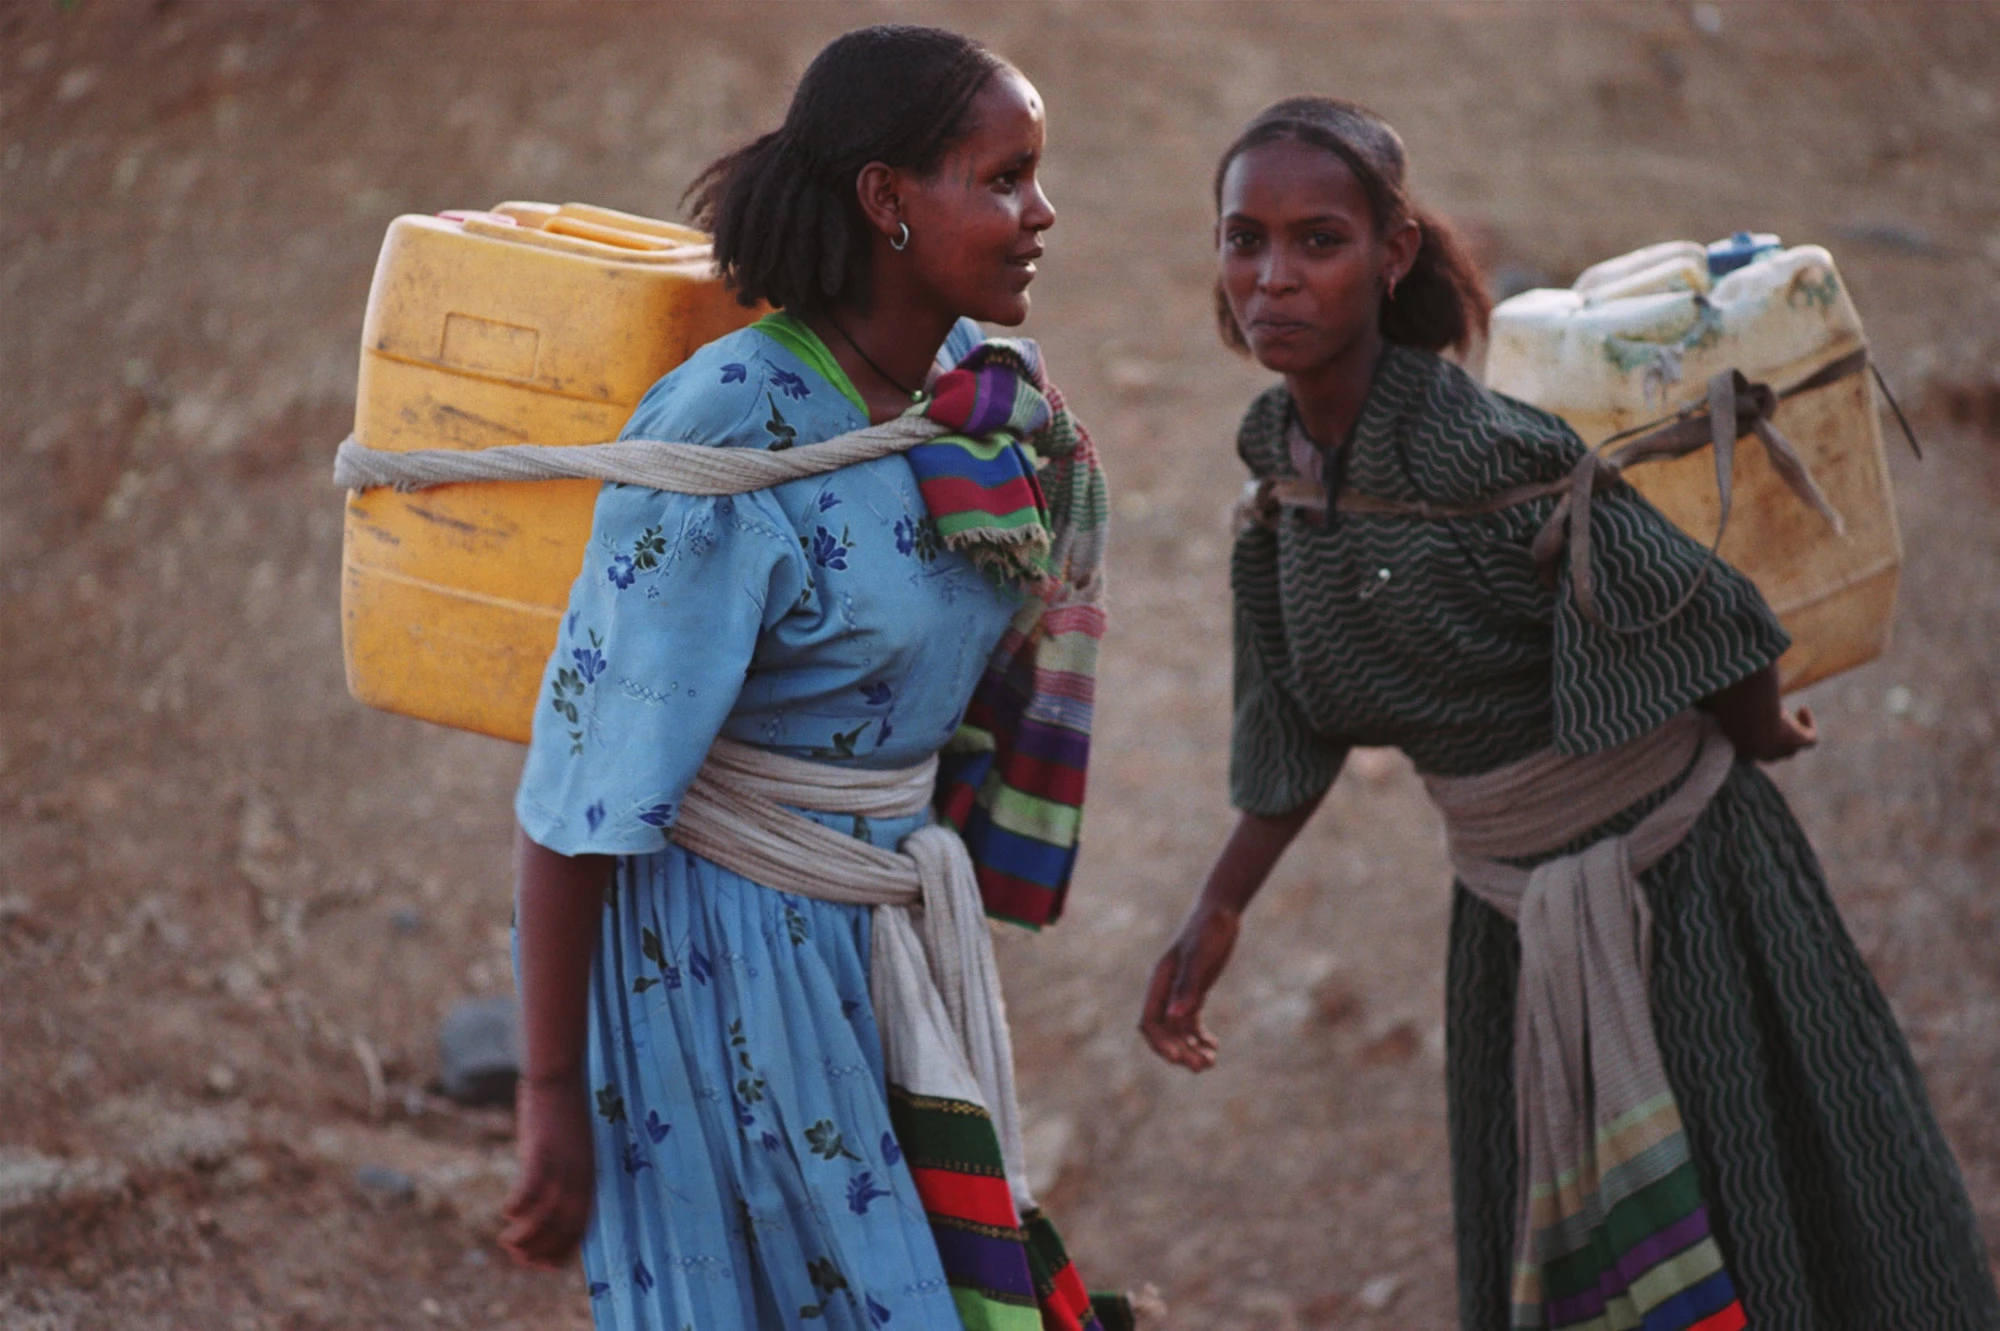 Ethiopian girls carrying water. Waterdotorg/Heather Arney